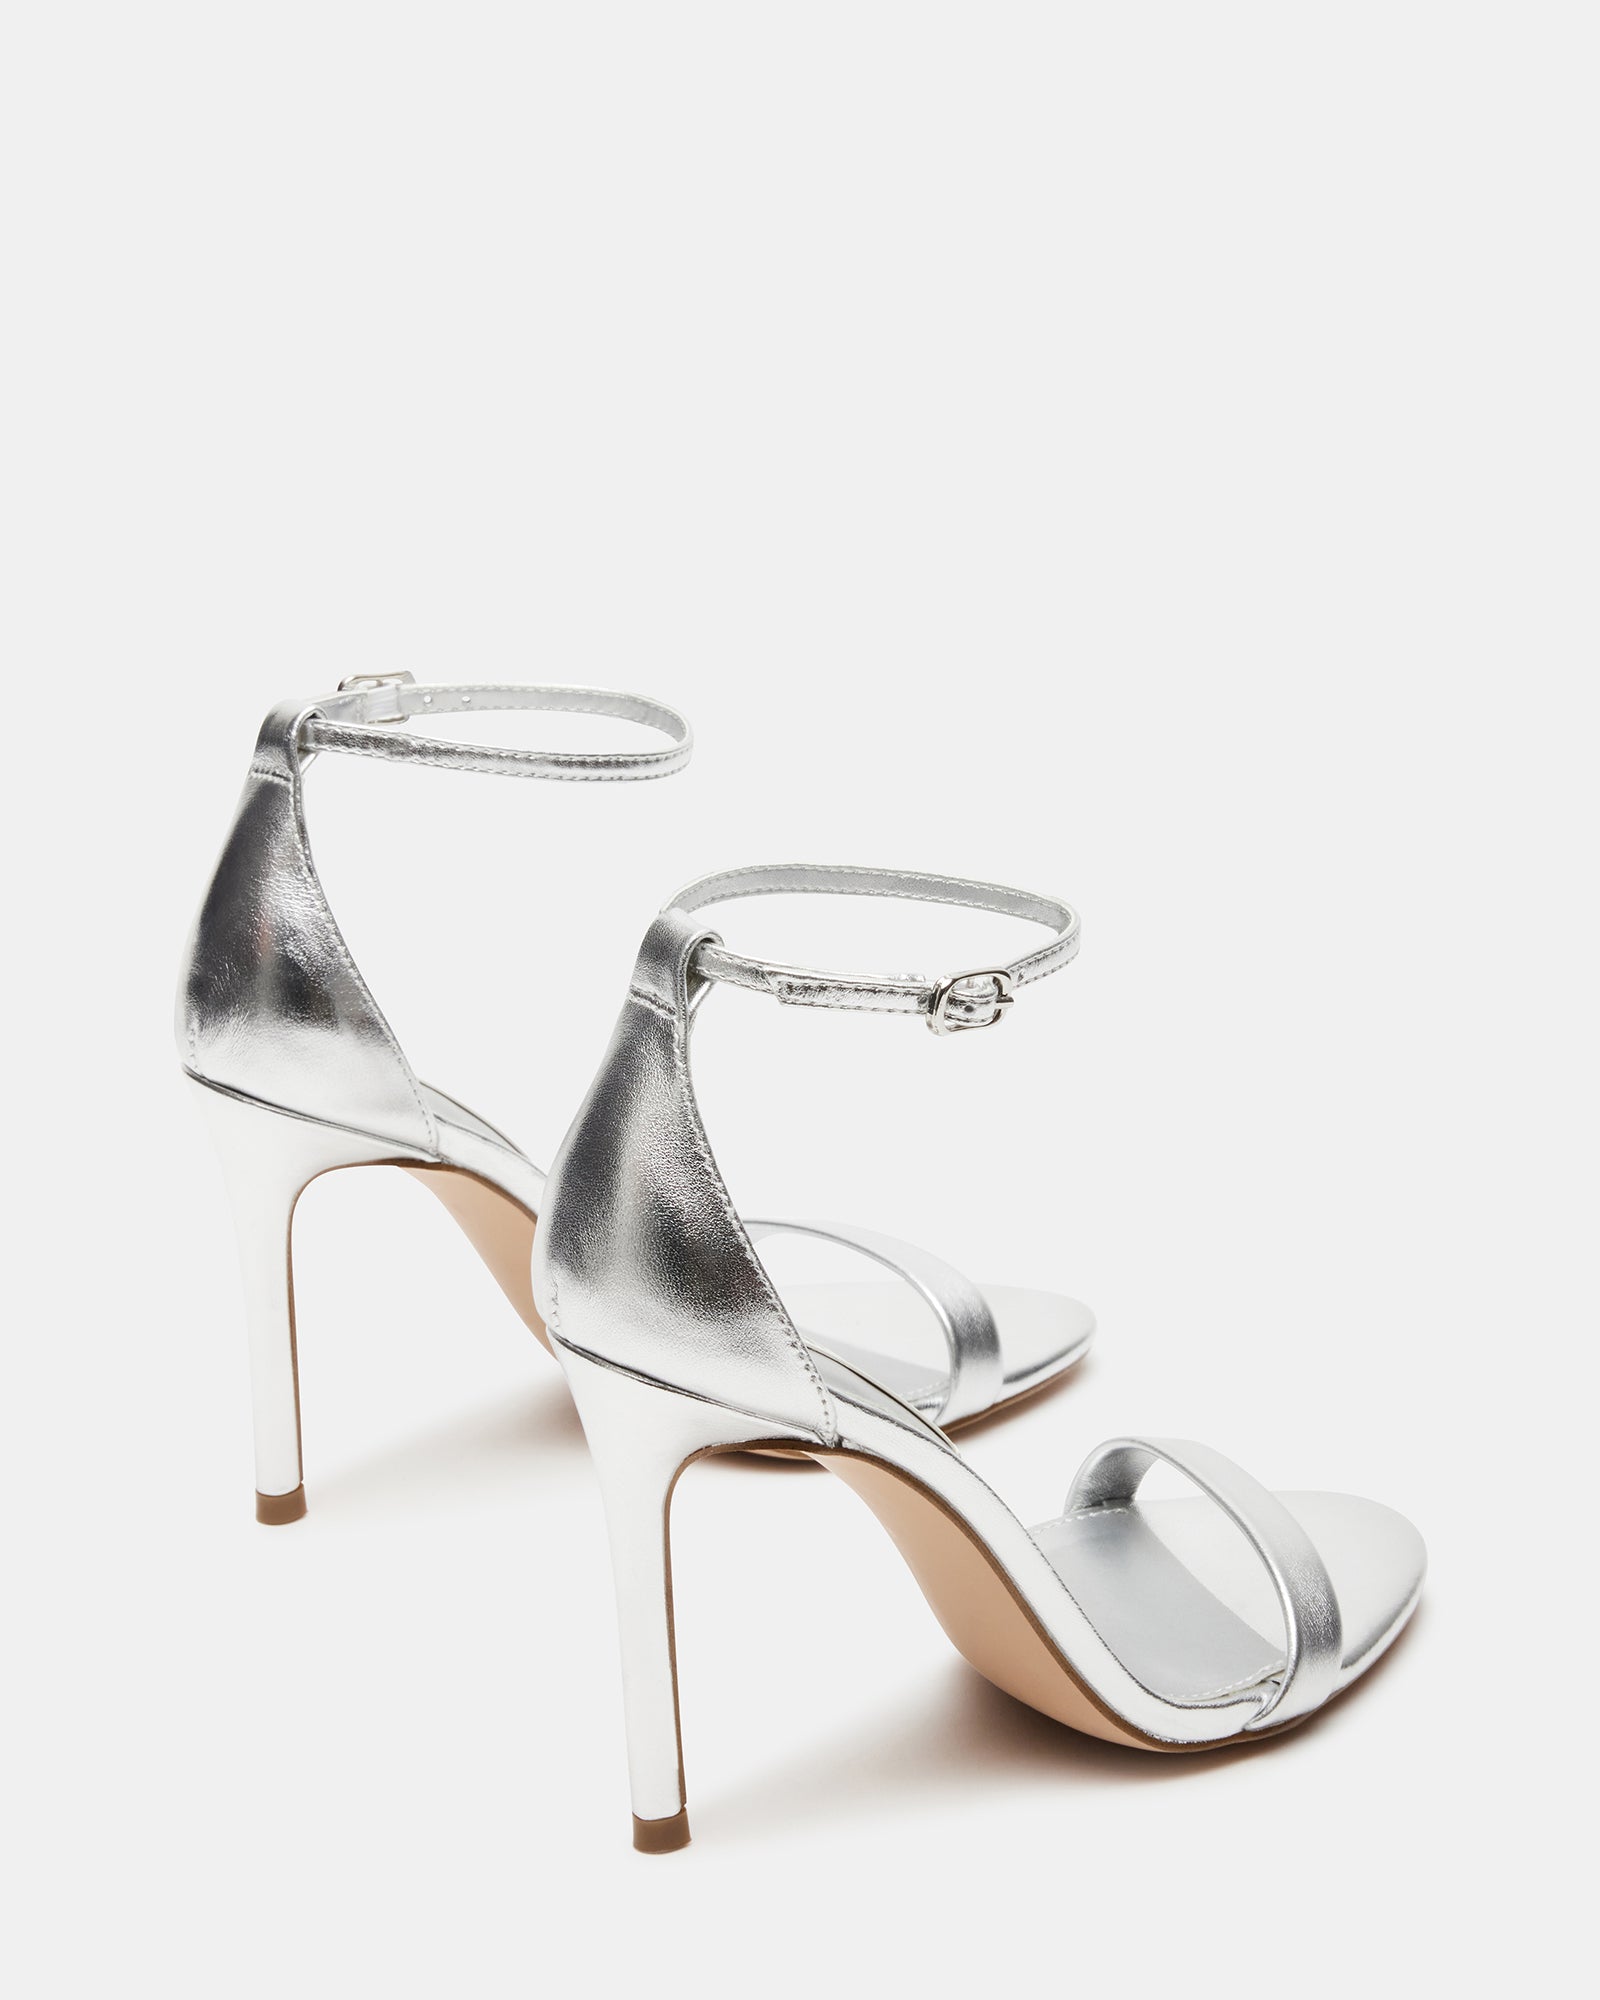 TECY Silver Leather Ankle Strap Heel | Women's Heels – Steve Madden